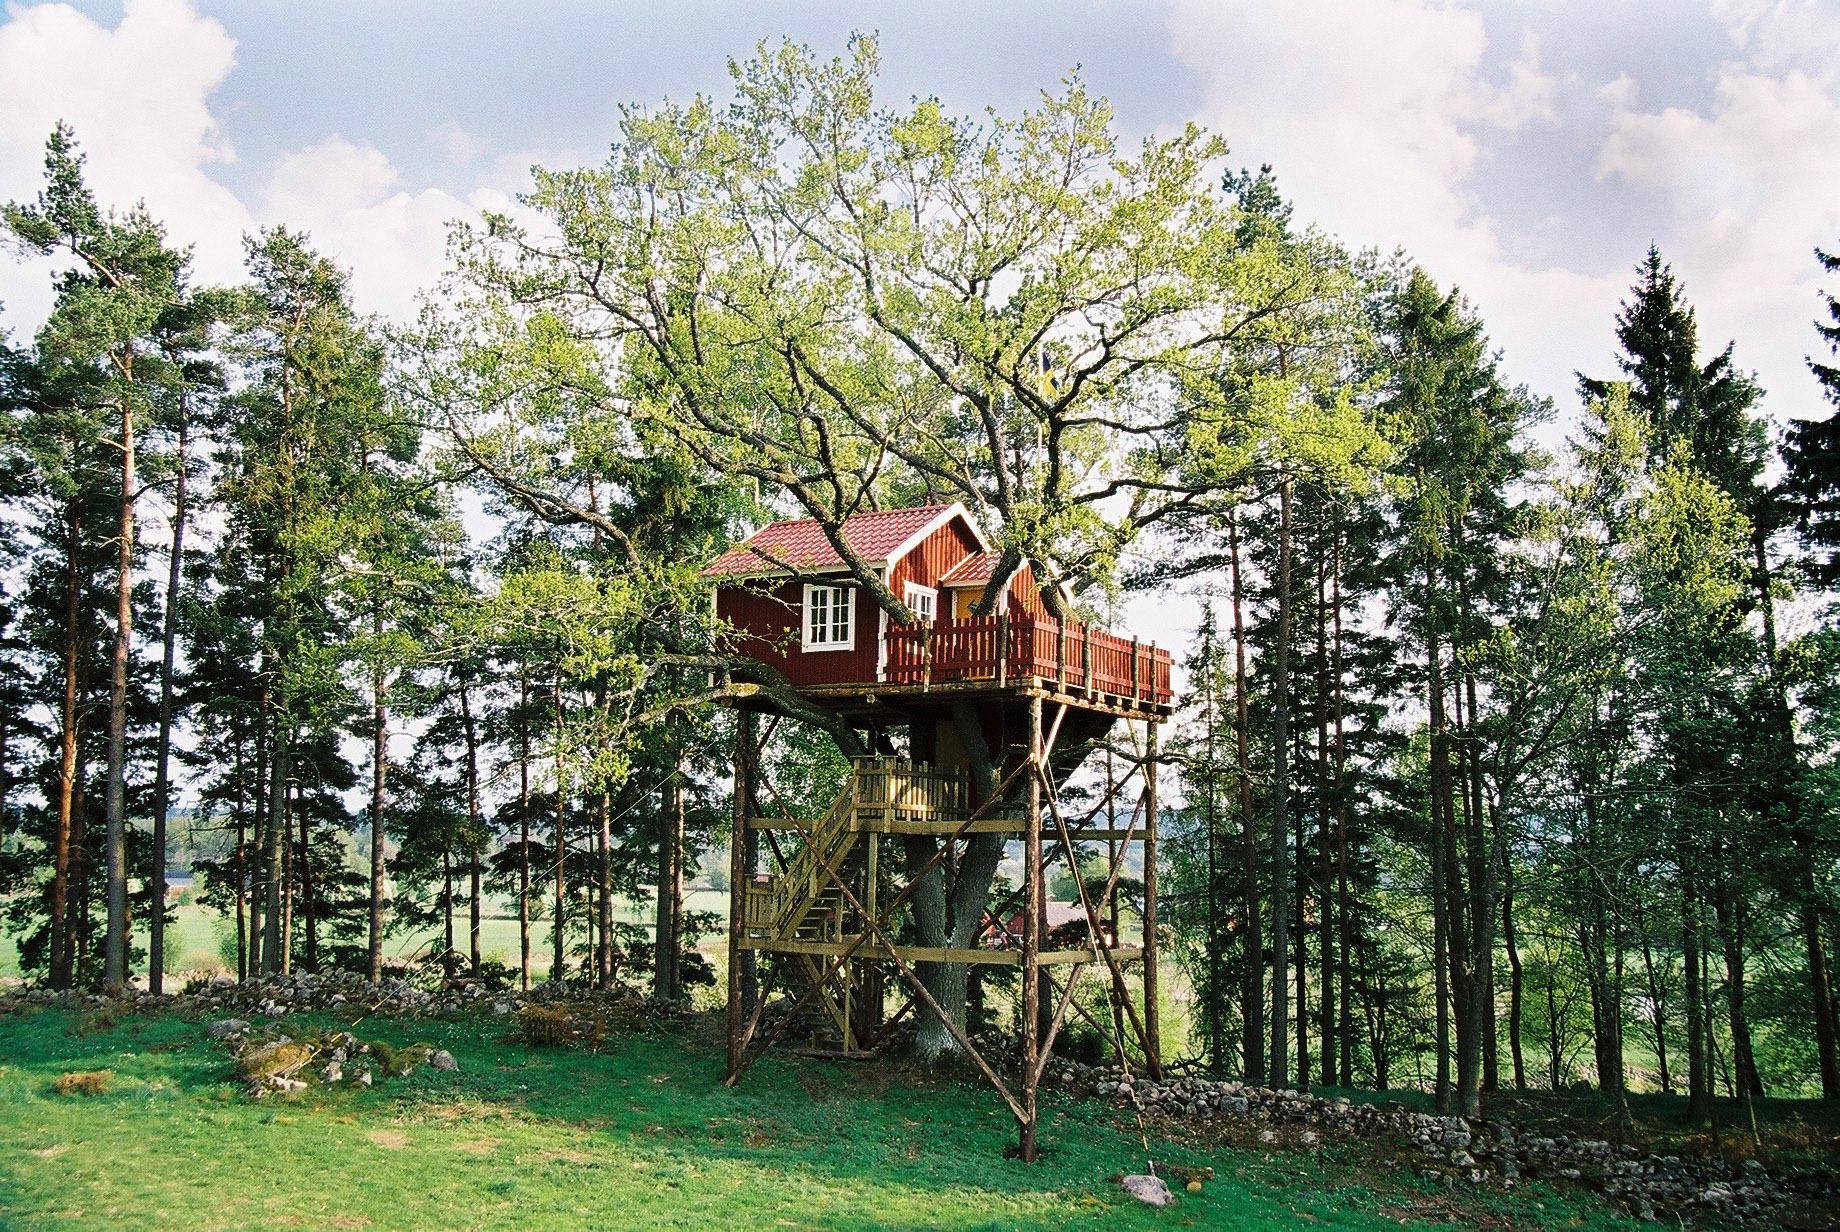 Une cabane en bois située à 6,5 mètres au-dessus du sol parmi les branches d'un chêne. Elle possède une terrasse clôturée en bois rouge et est reliée au sol par un escalier en bois.